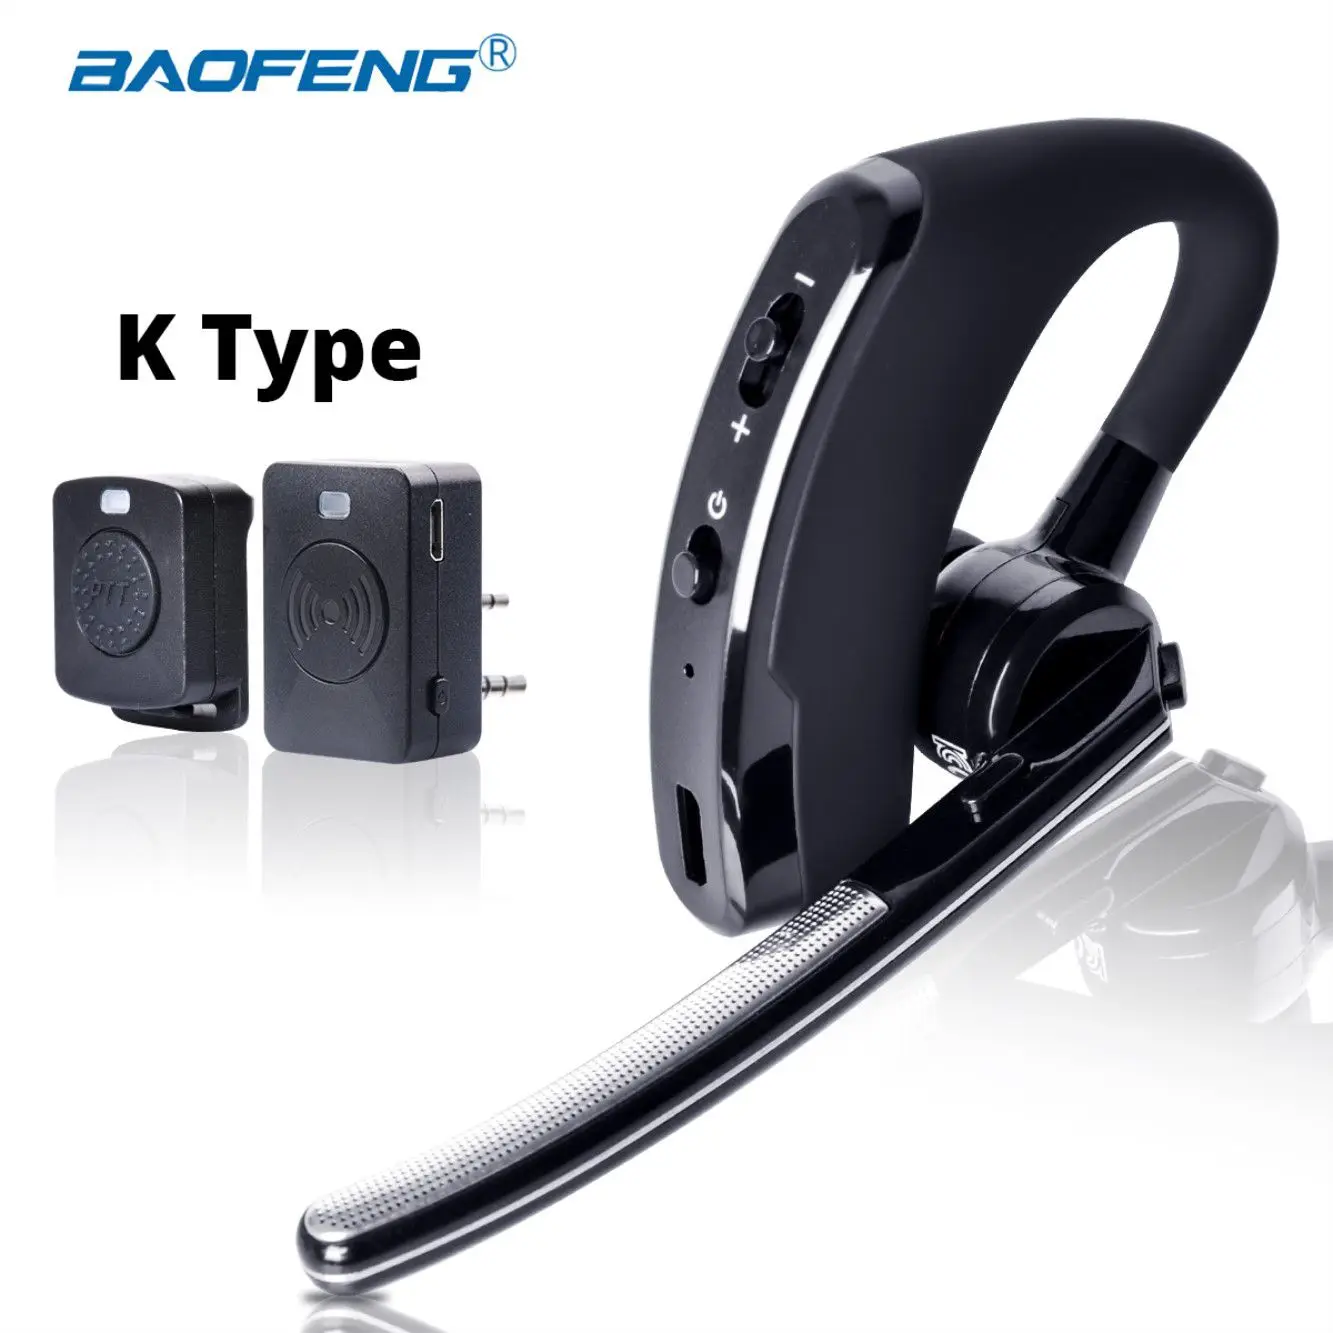 Baofeng Walkie Talkie Headset PTT Wireless Blue tooth Earphone for Two way Radio K Port Wireless headphone for UV 5R 82 8W 888s